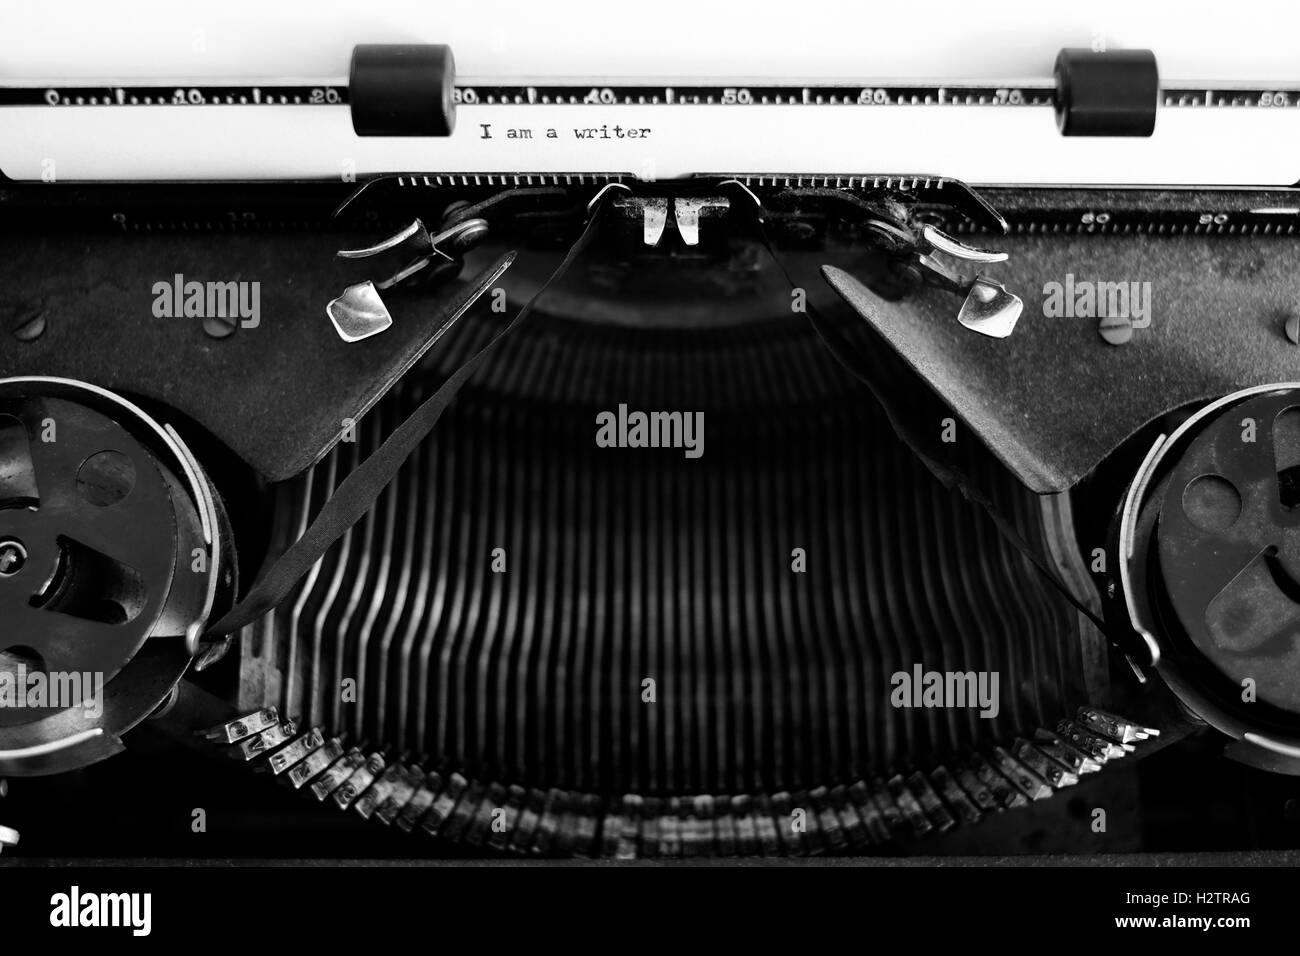 Gros plan Détail de la vieille machine à écrire avec du papier pour l'écriture de communication que je suis un écrivain Banque D'Images